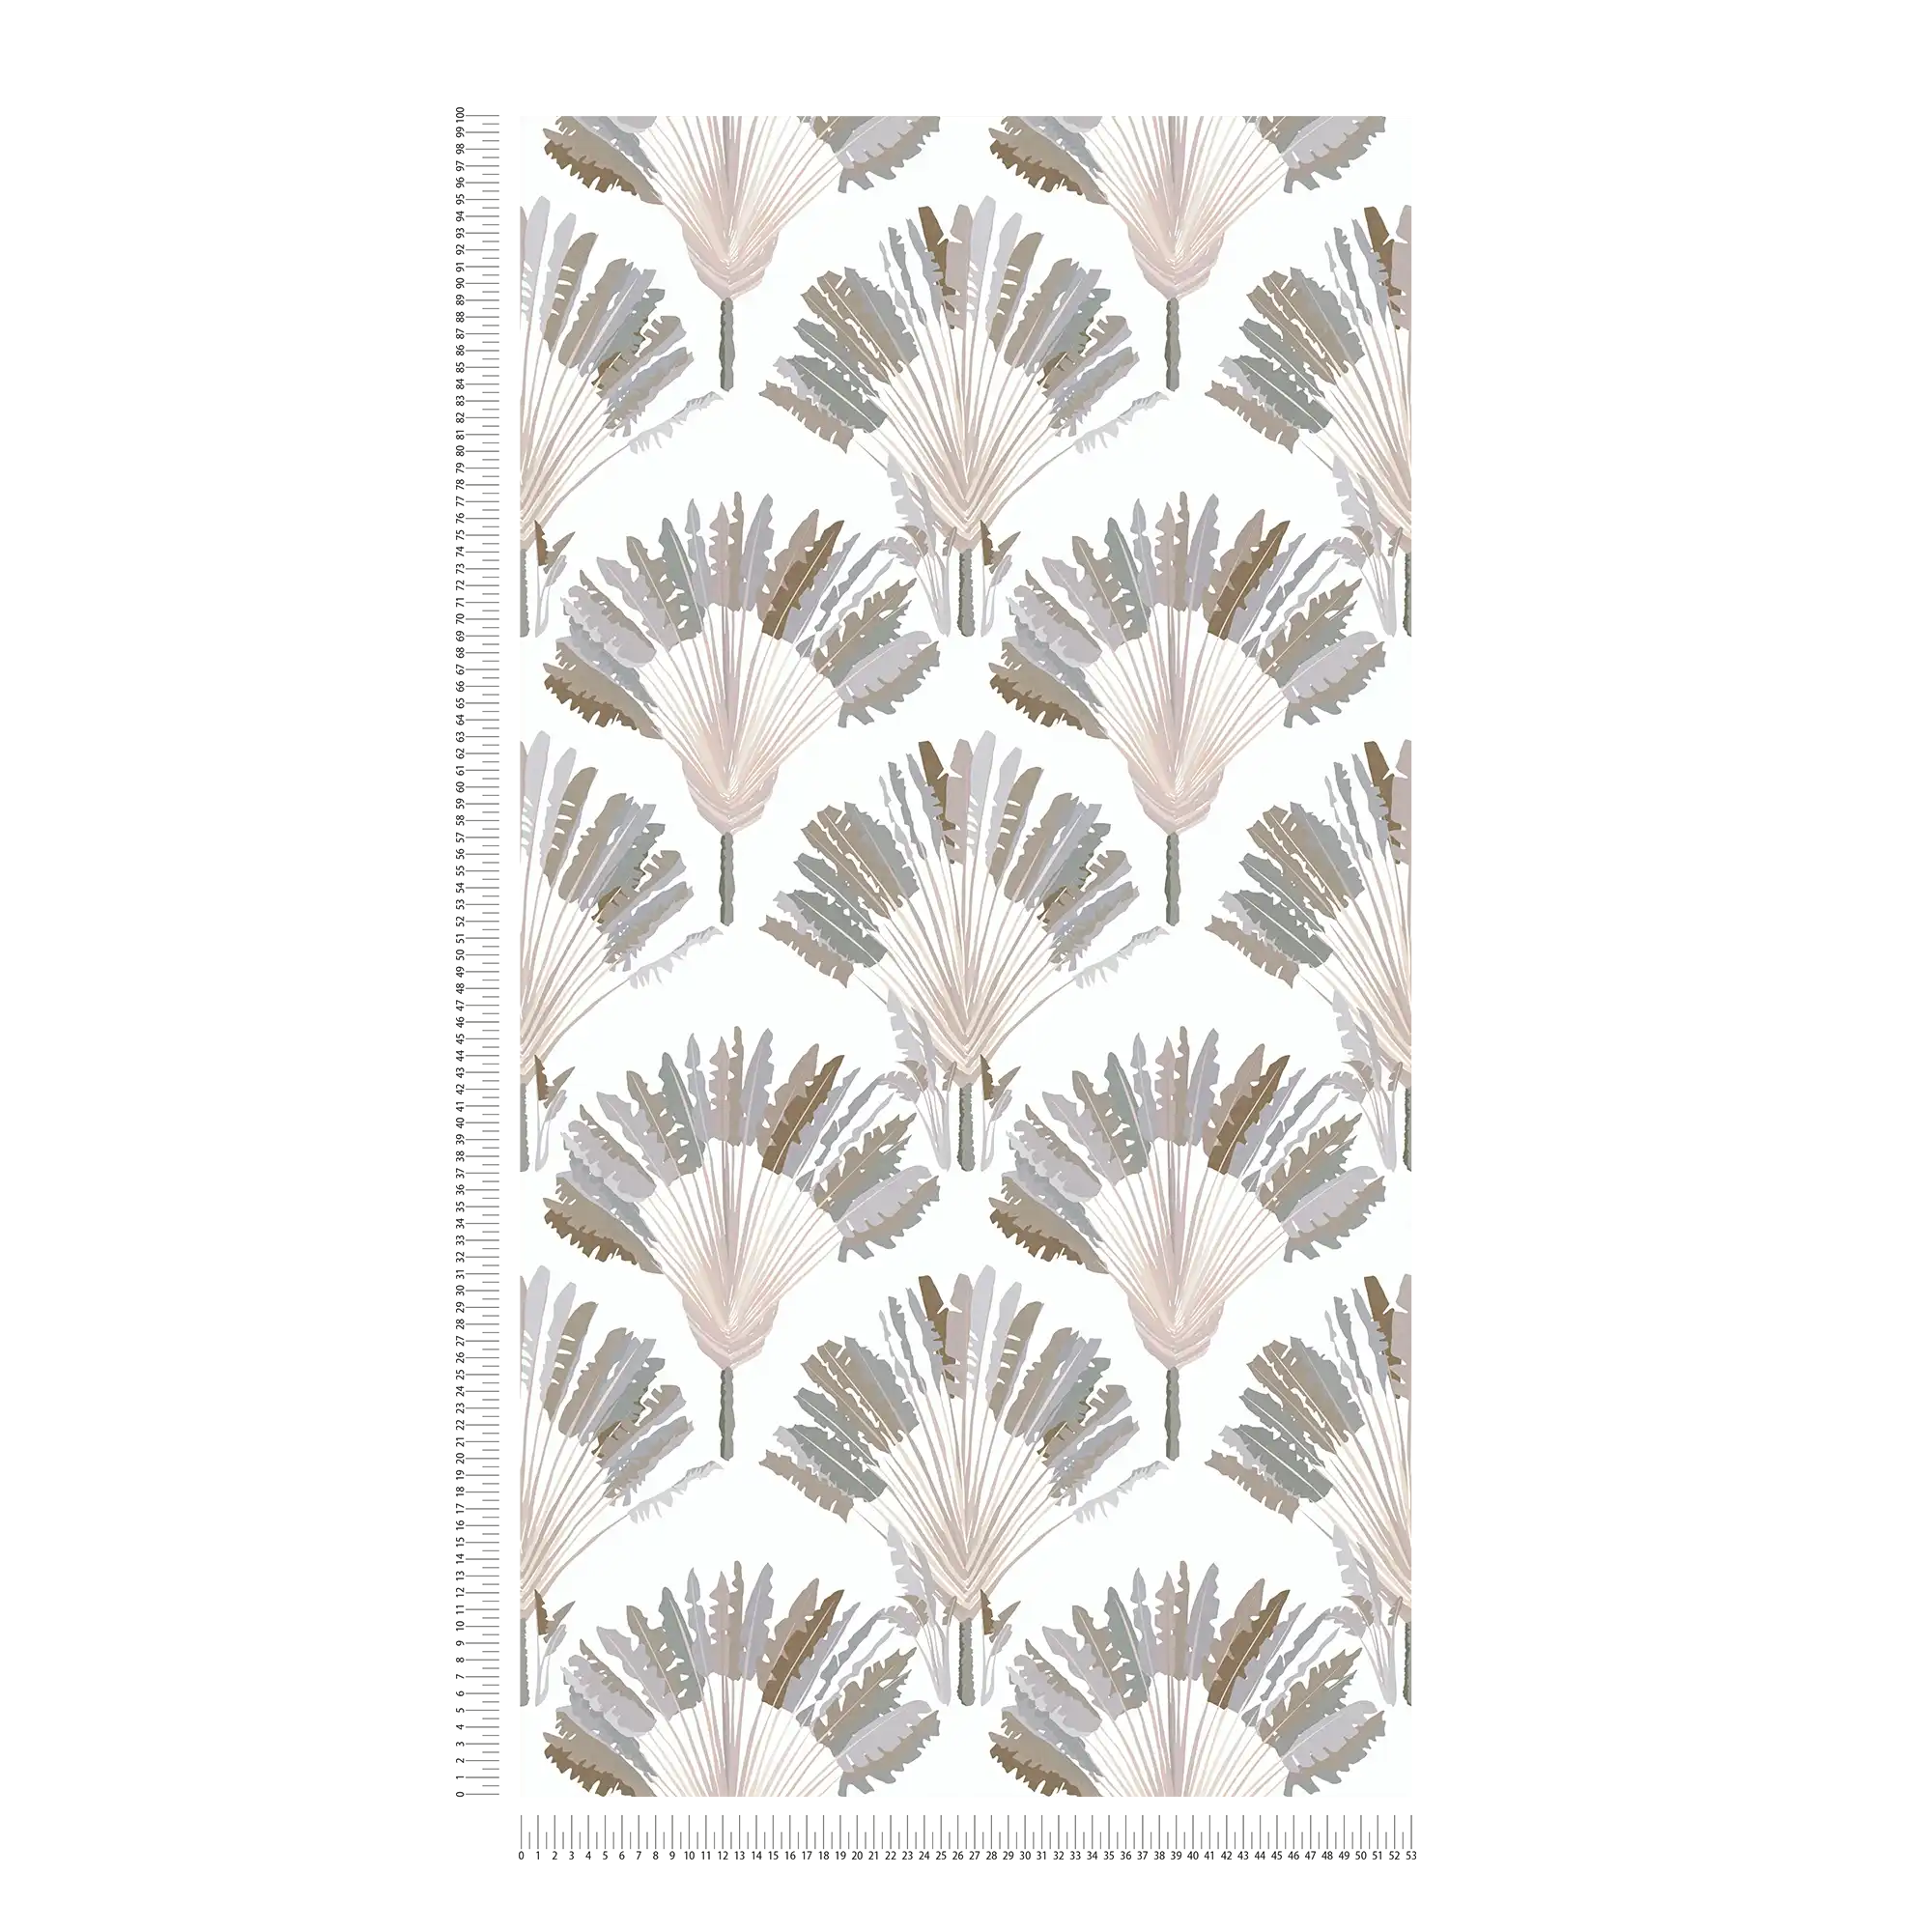             Tapete Grau Beige mit Palmen Muster & Block Design – Grau, Weiß, Braun
        